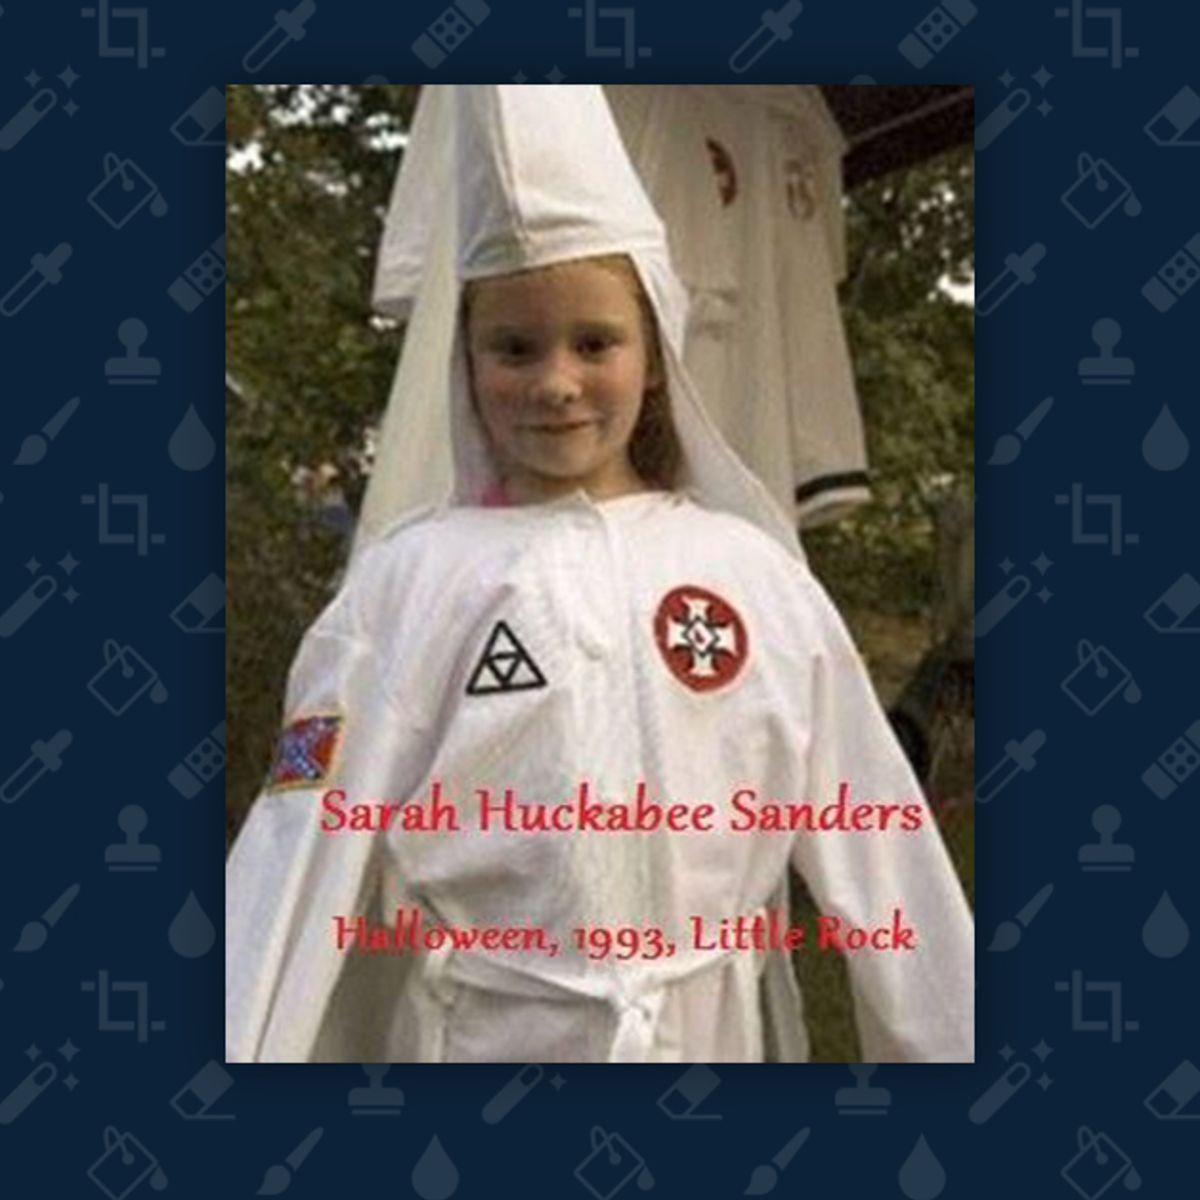 Did Sarah Huckabee Sanders Wear a KKK Halloween Costume in 1993